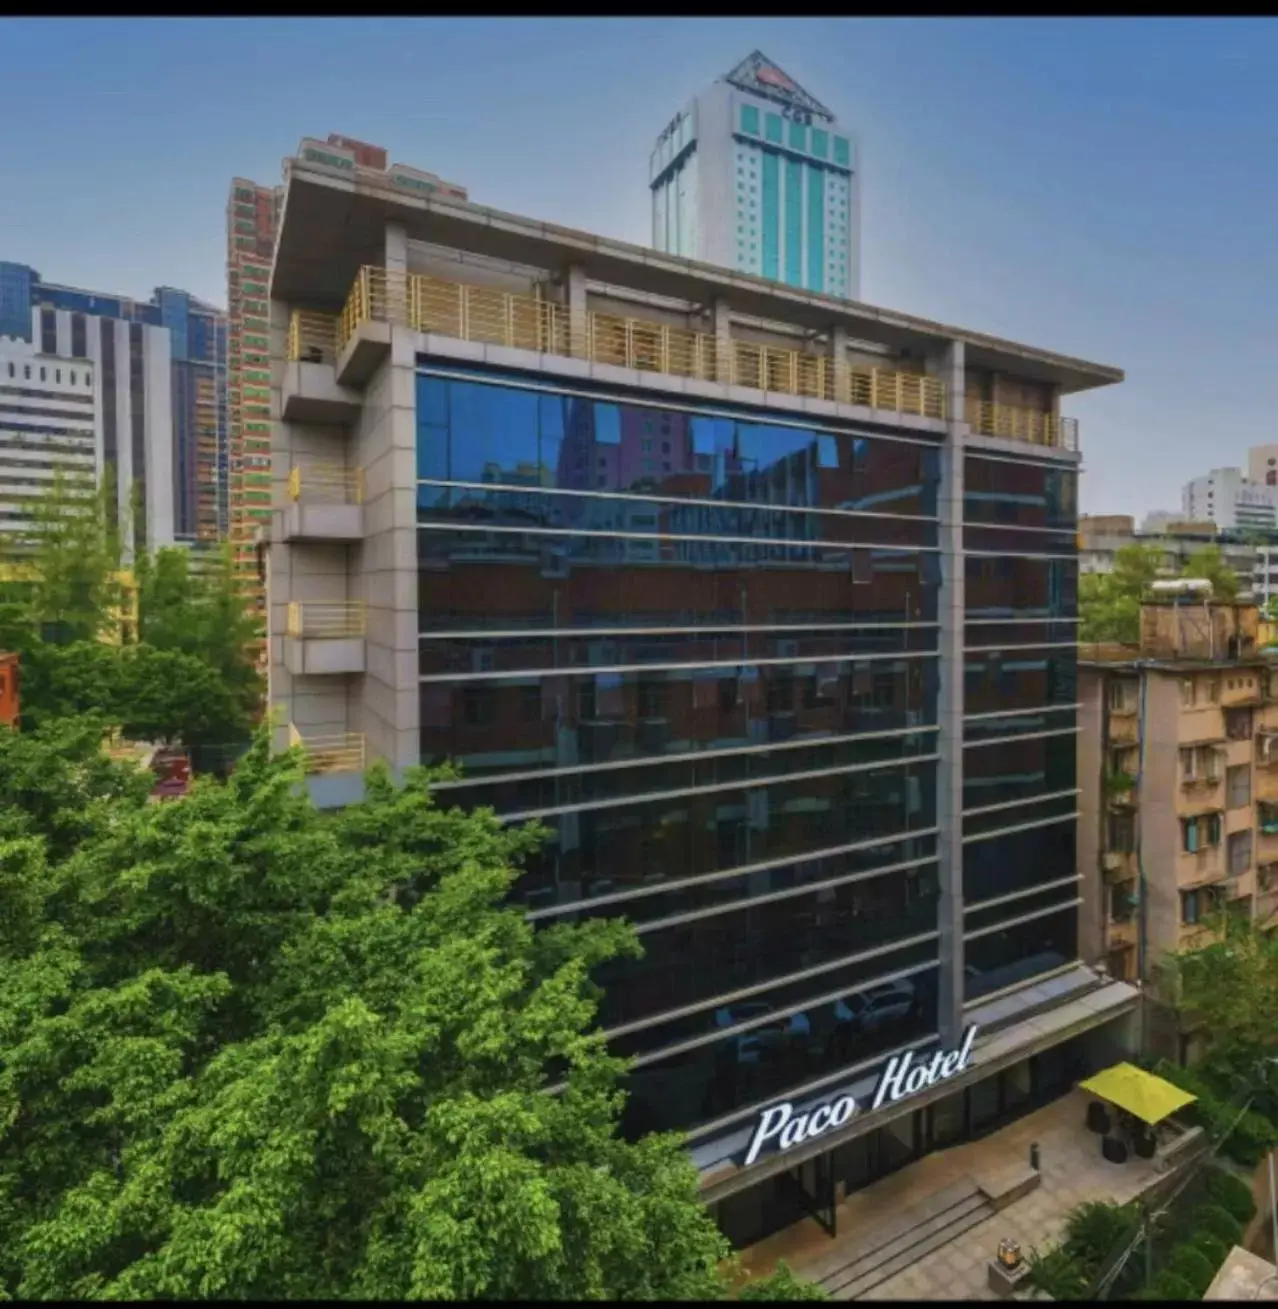 Property Building in Paco Hotel Ouzhuang Metro Guangzhou-Free shuttle to Canton fair